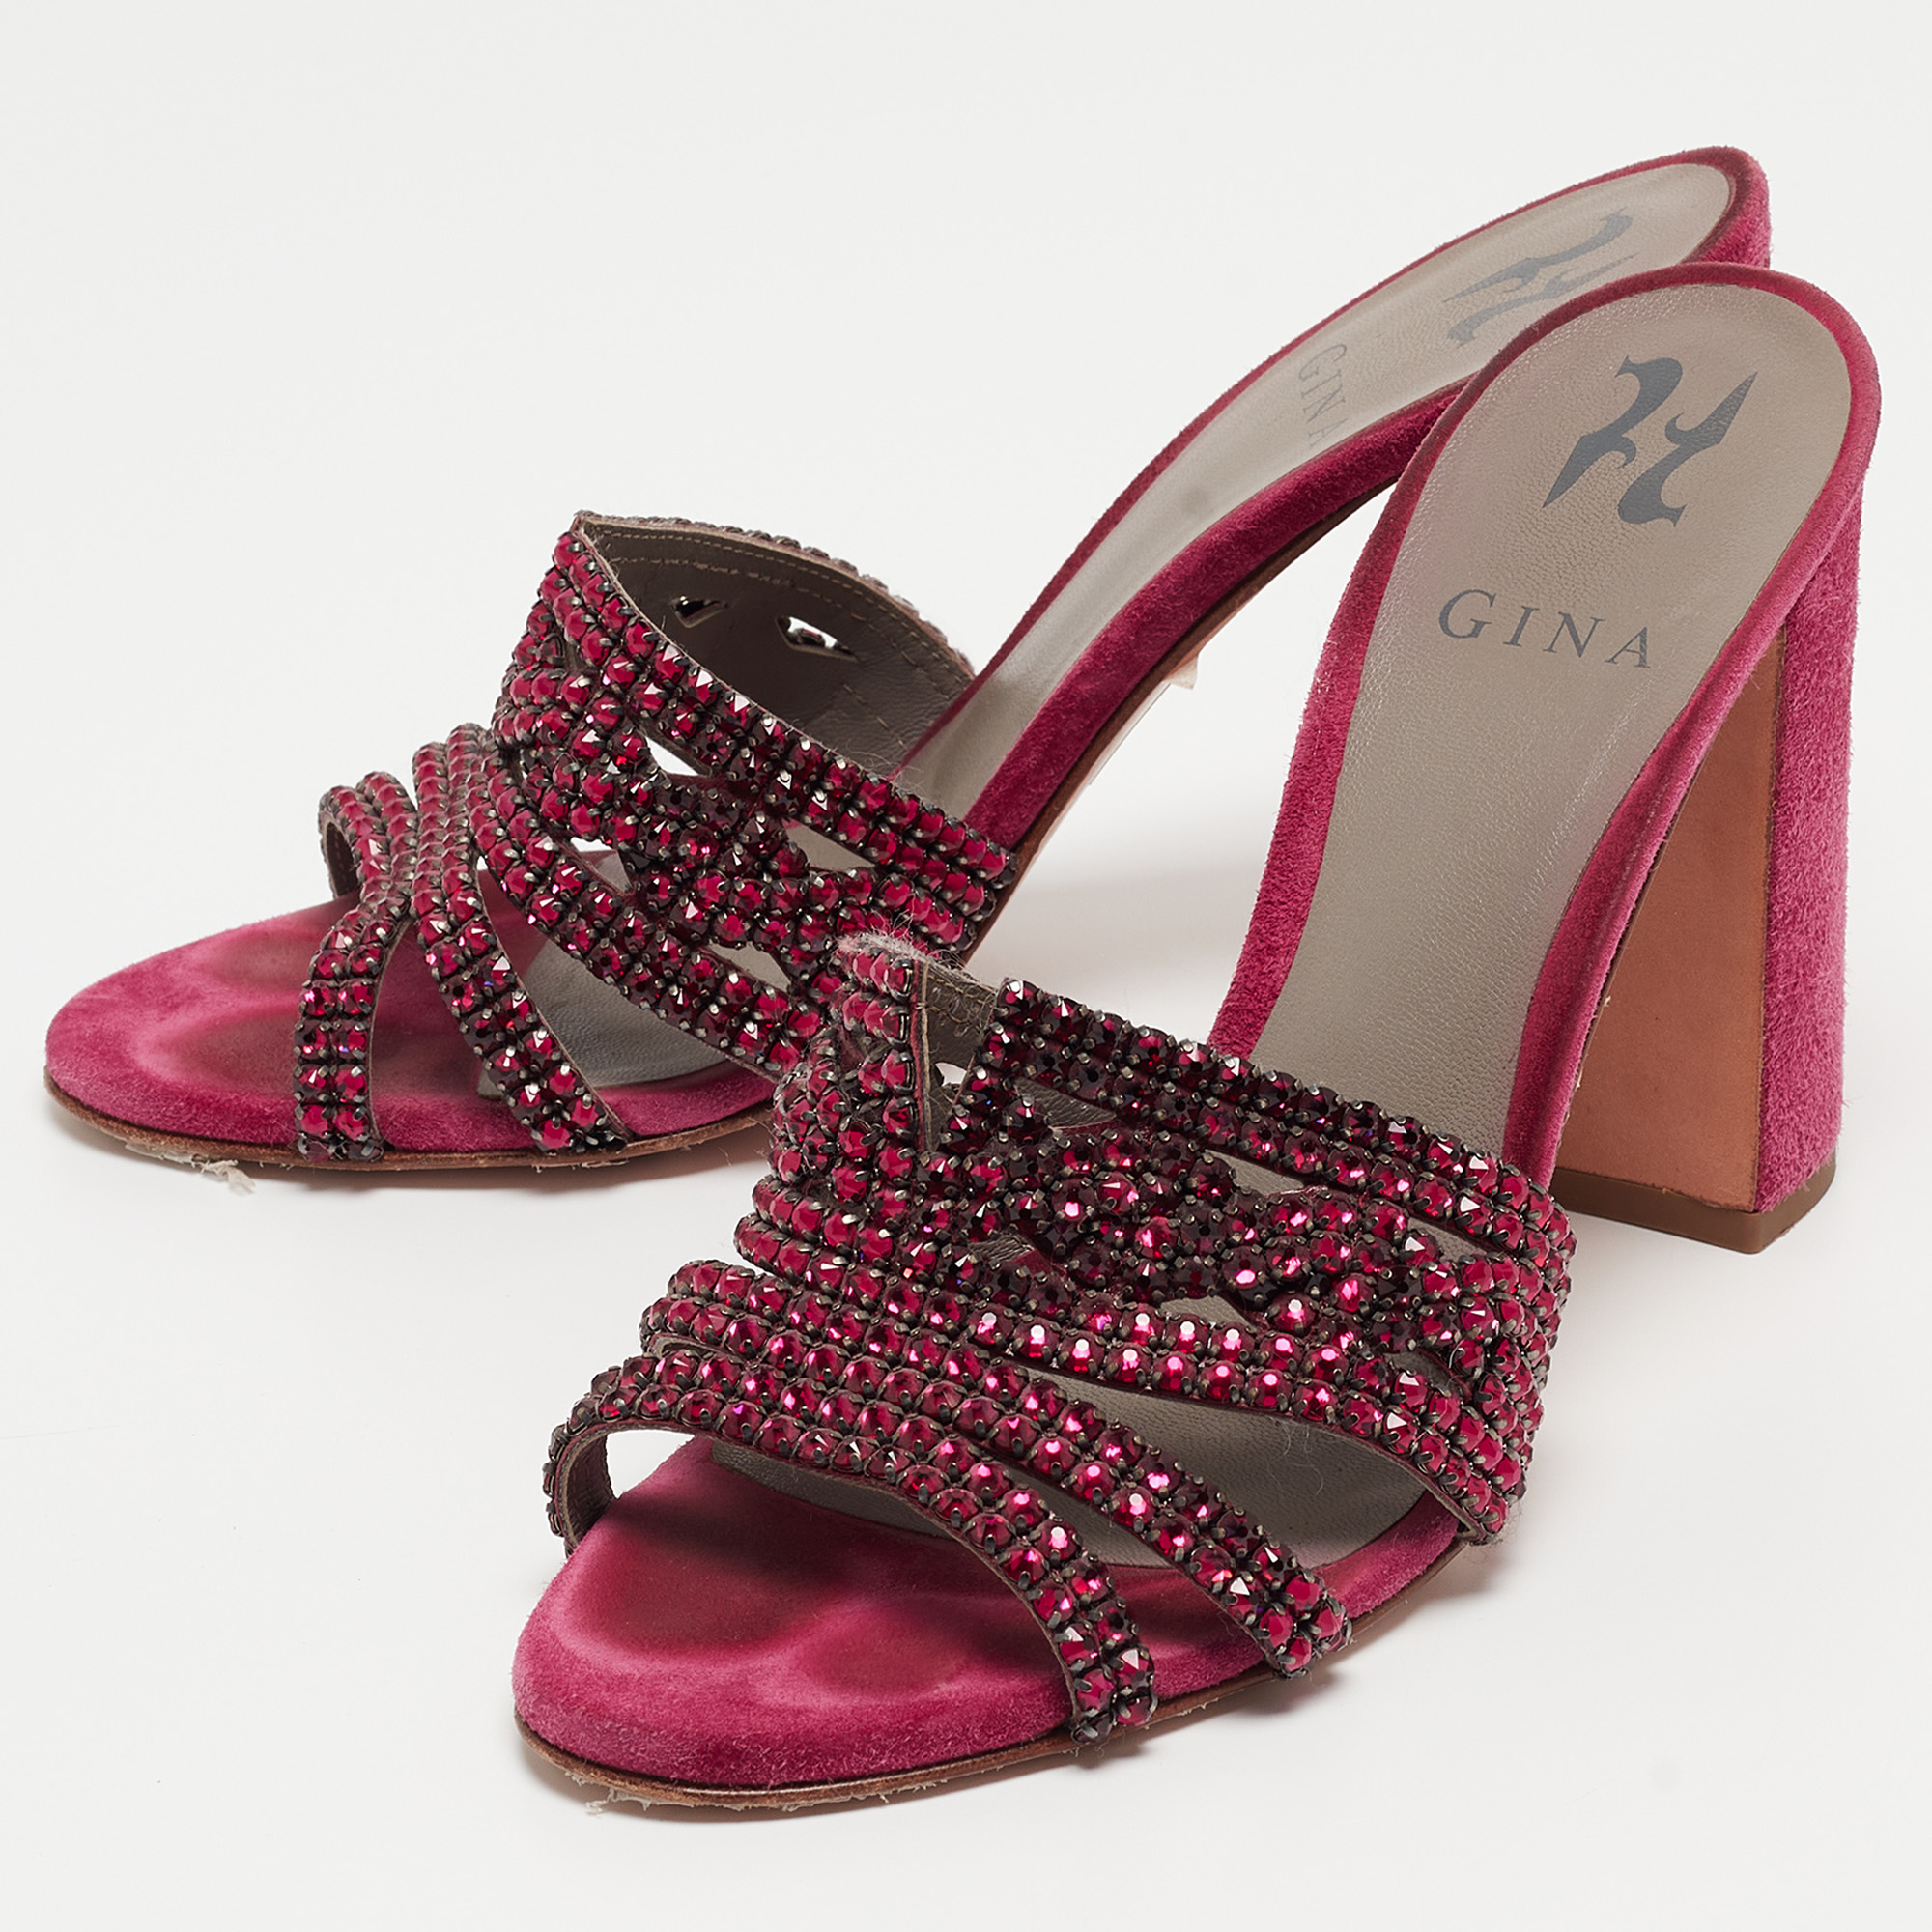 

Gina Pink Crystal Embellished Leather Slide Sandals Size